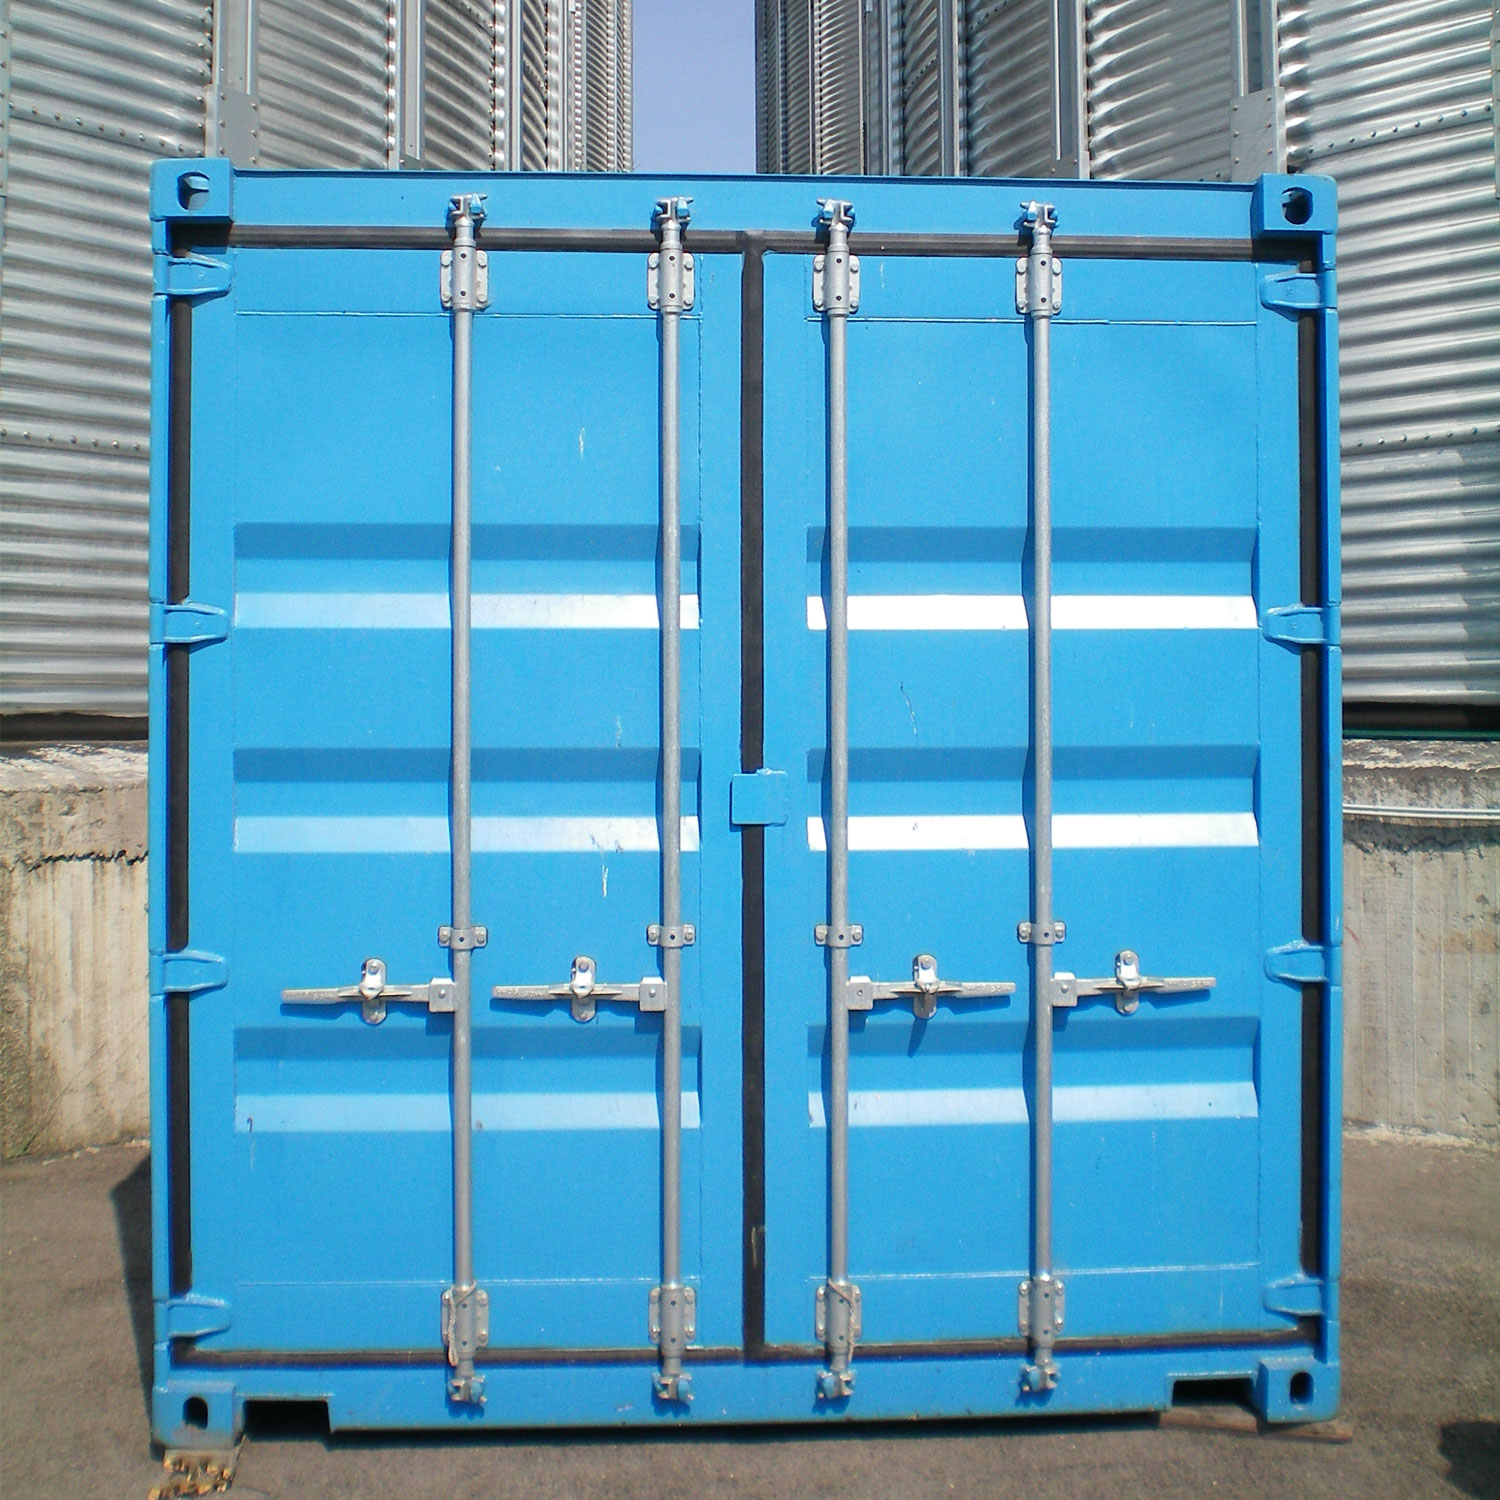 Imagen BOGE BLUEprotect
La solución de contenedores ecológica para silos de cereales, malterías y similar